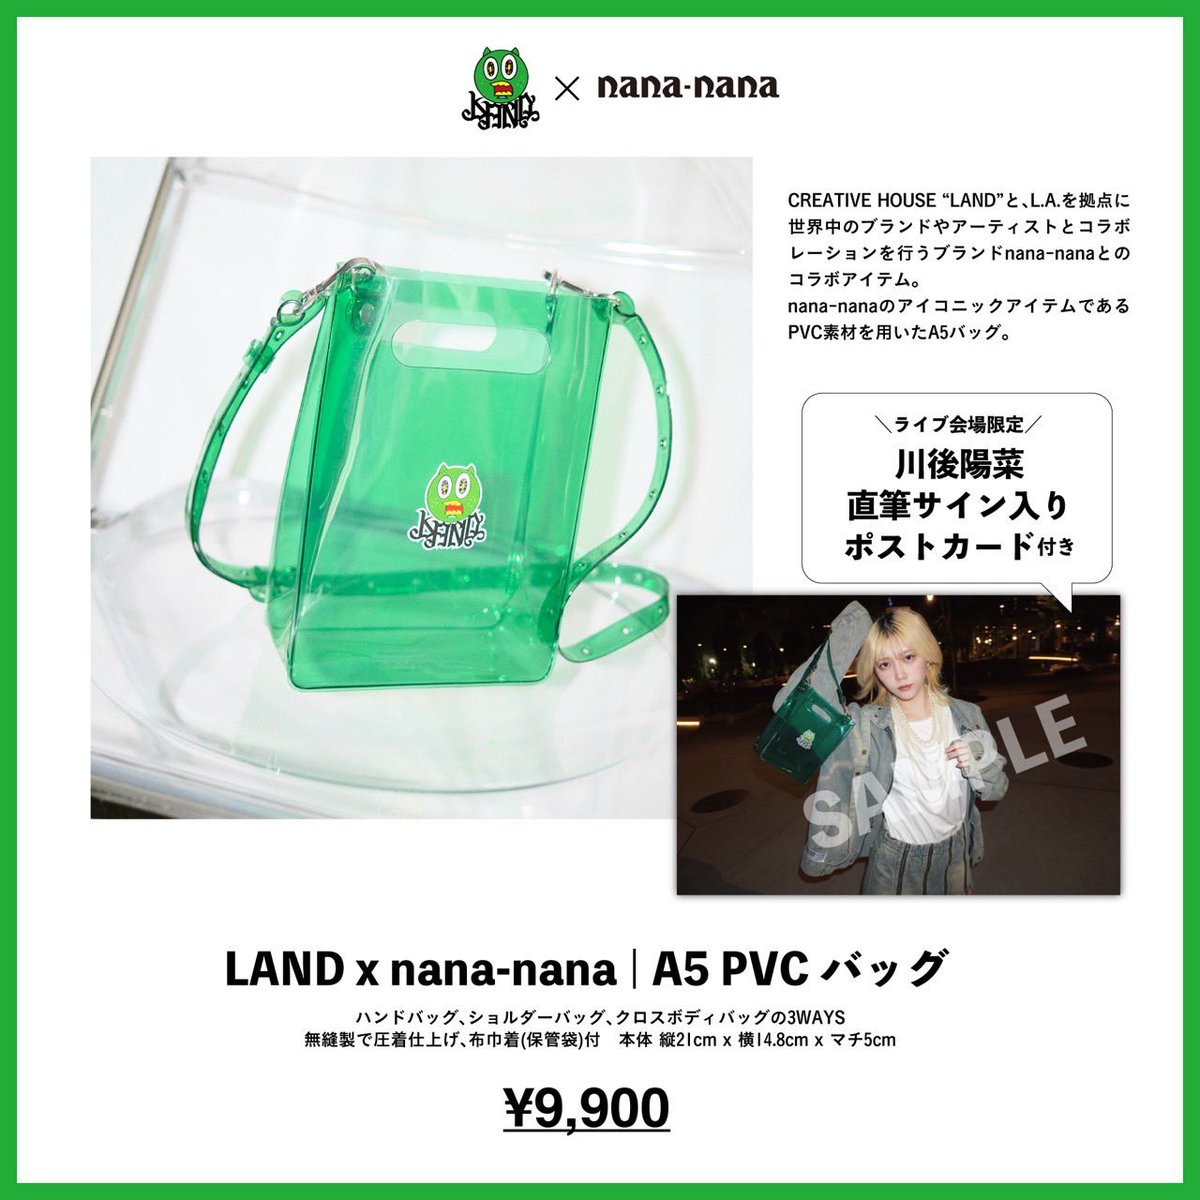 ＼グッズ追加決定／
明日、LAND特製PVCバッグの販売が決定🧳
購入された方には川後陽菜サイン入りスペシャルポストカードが貰えます🫰🏻